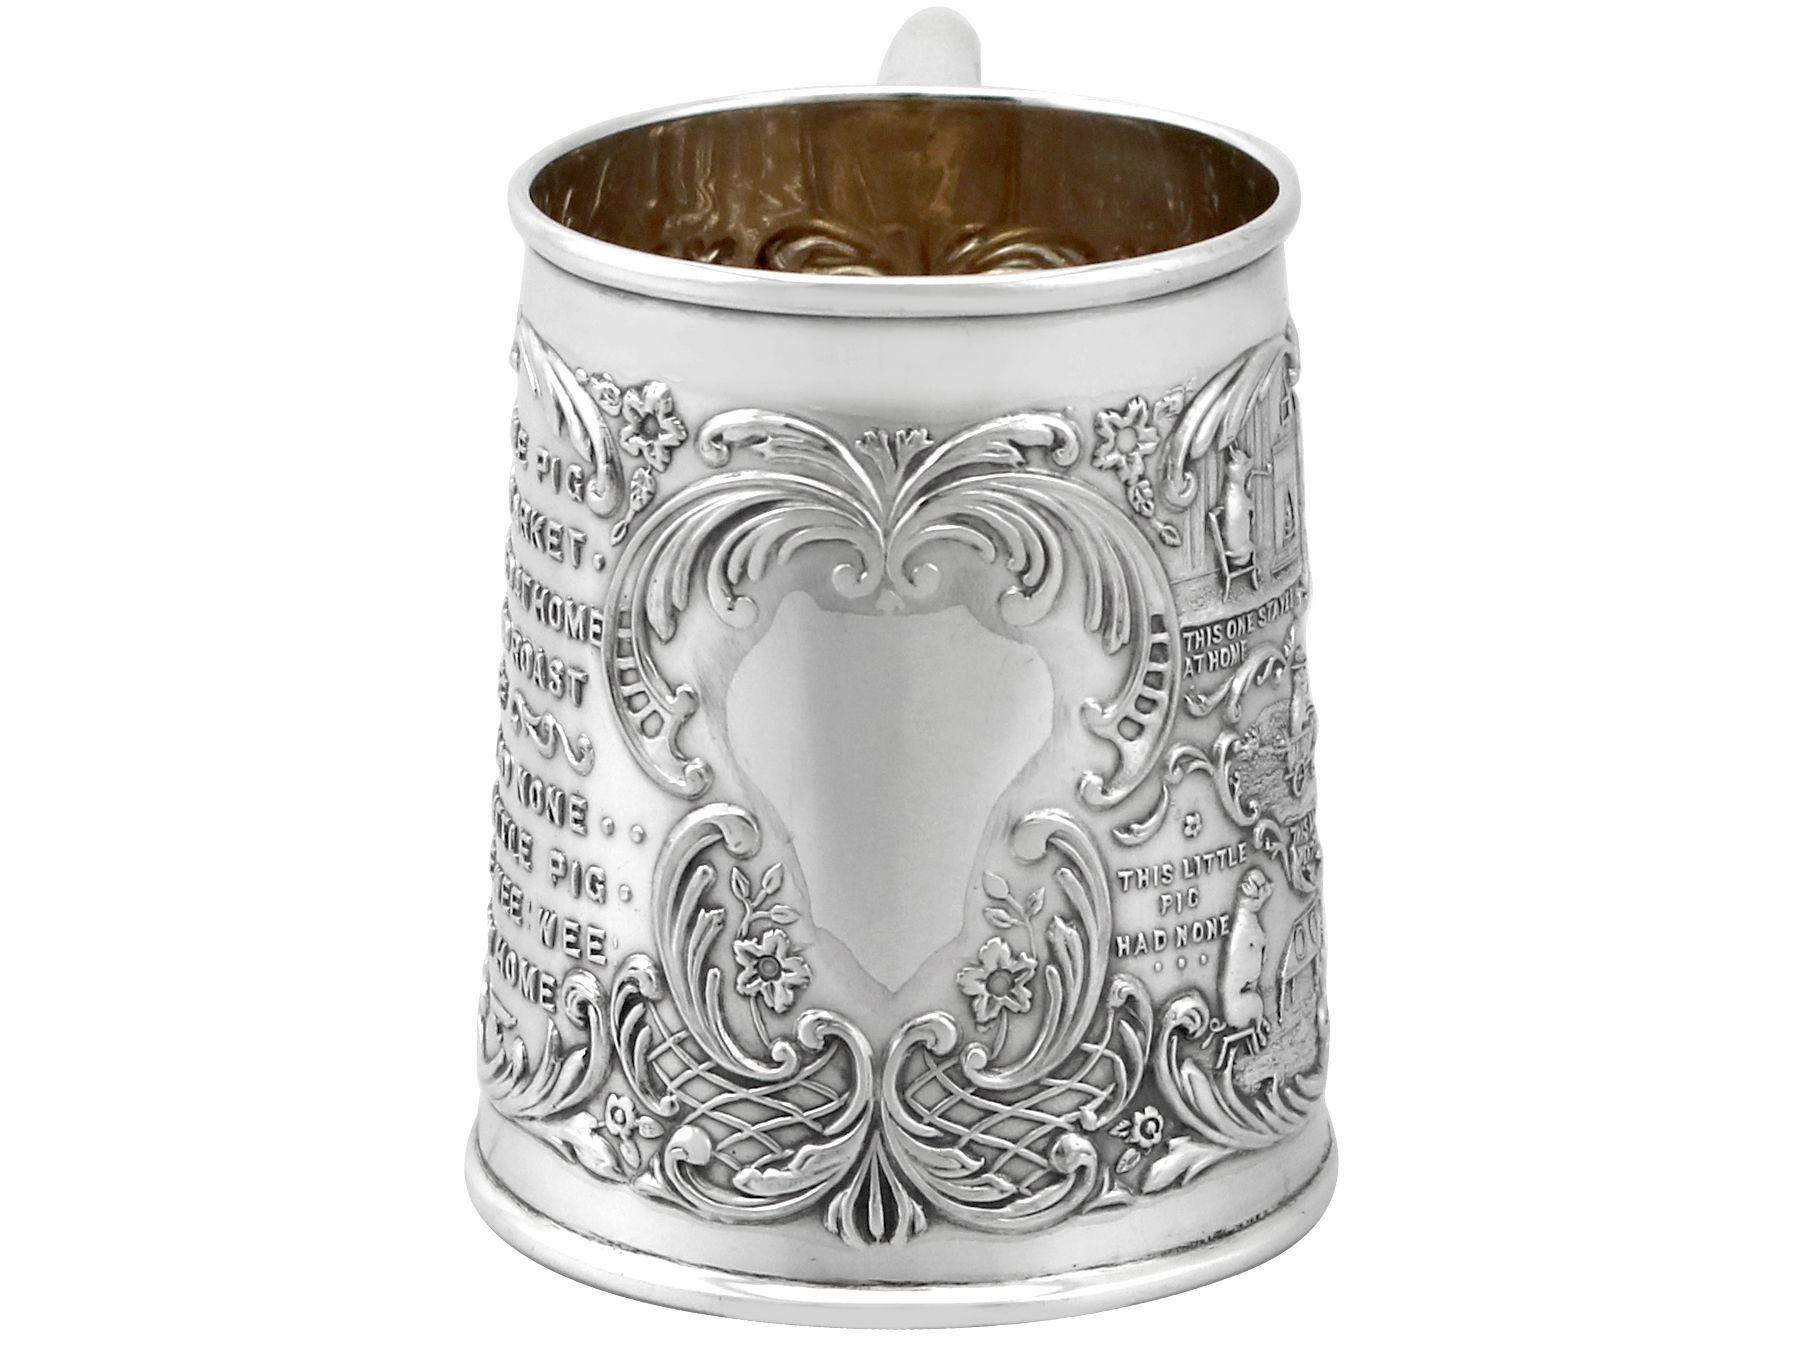 Una excepcional, fina e impresionante taza de bautizo de plata de ley inglesa de la época eduardiana; una adición a nuestra colección de presentaciones de plata.

Esta excepcional taza de bautizo de plata de ley de la época eduardiana tiene forma